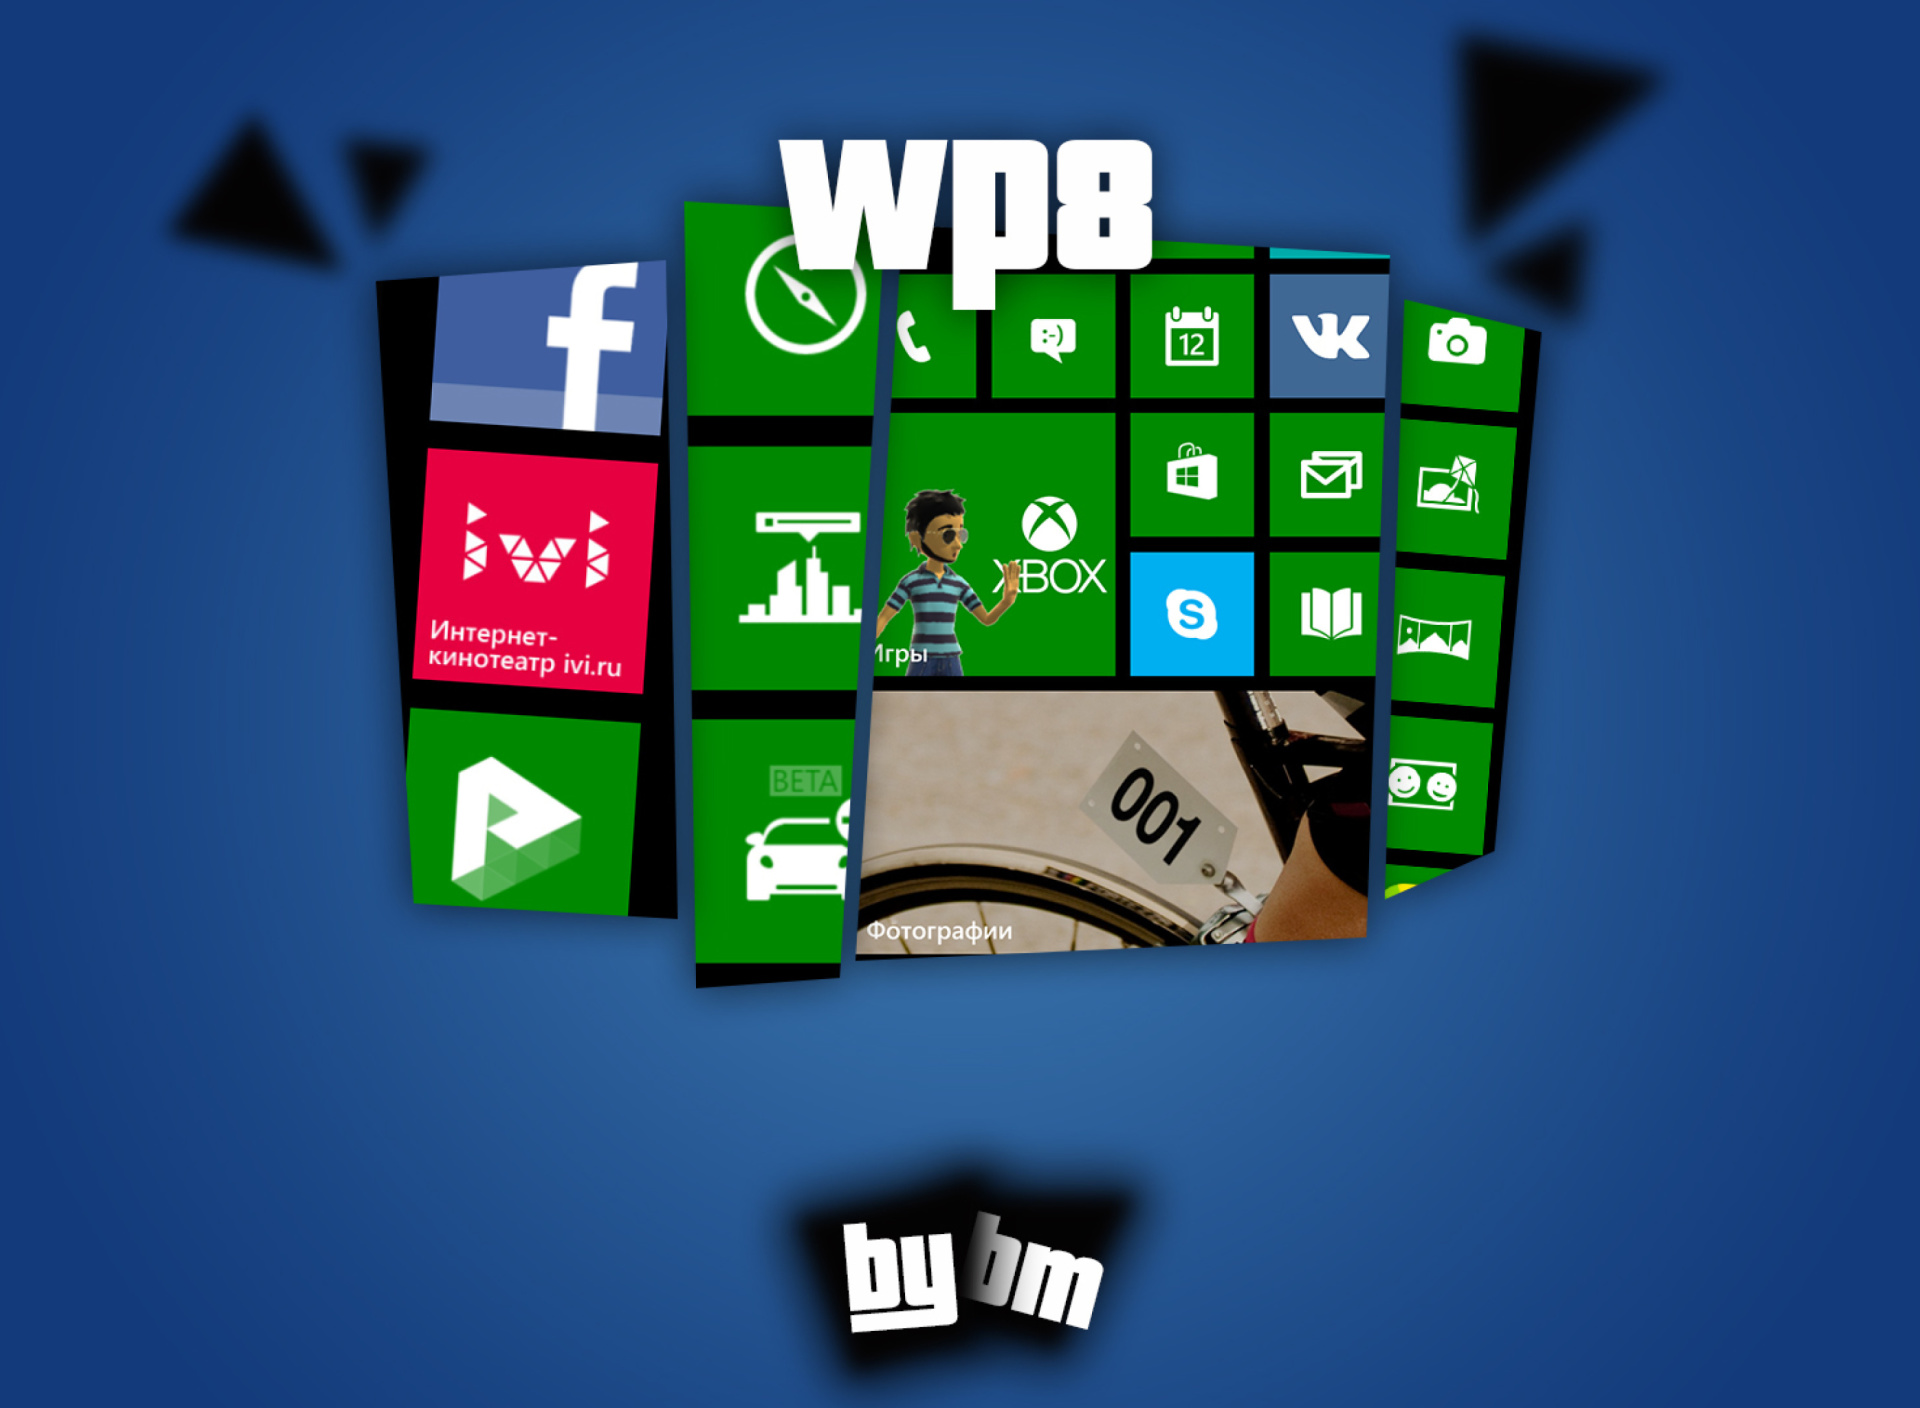 Fondo de pantalla Wp8, Windows Phone 8 1920x1408